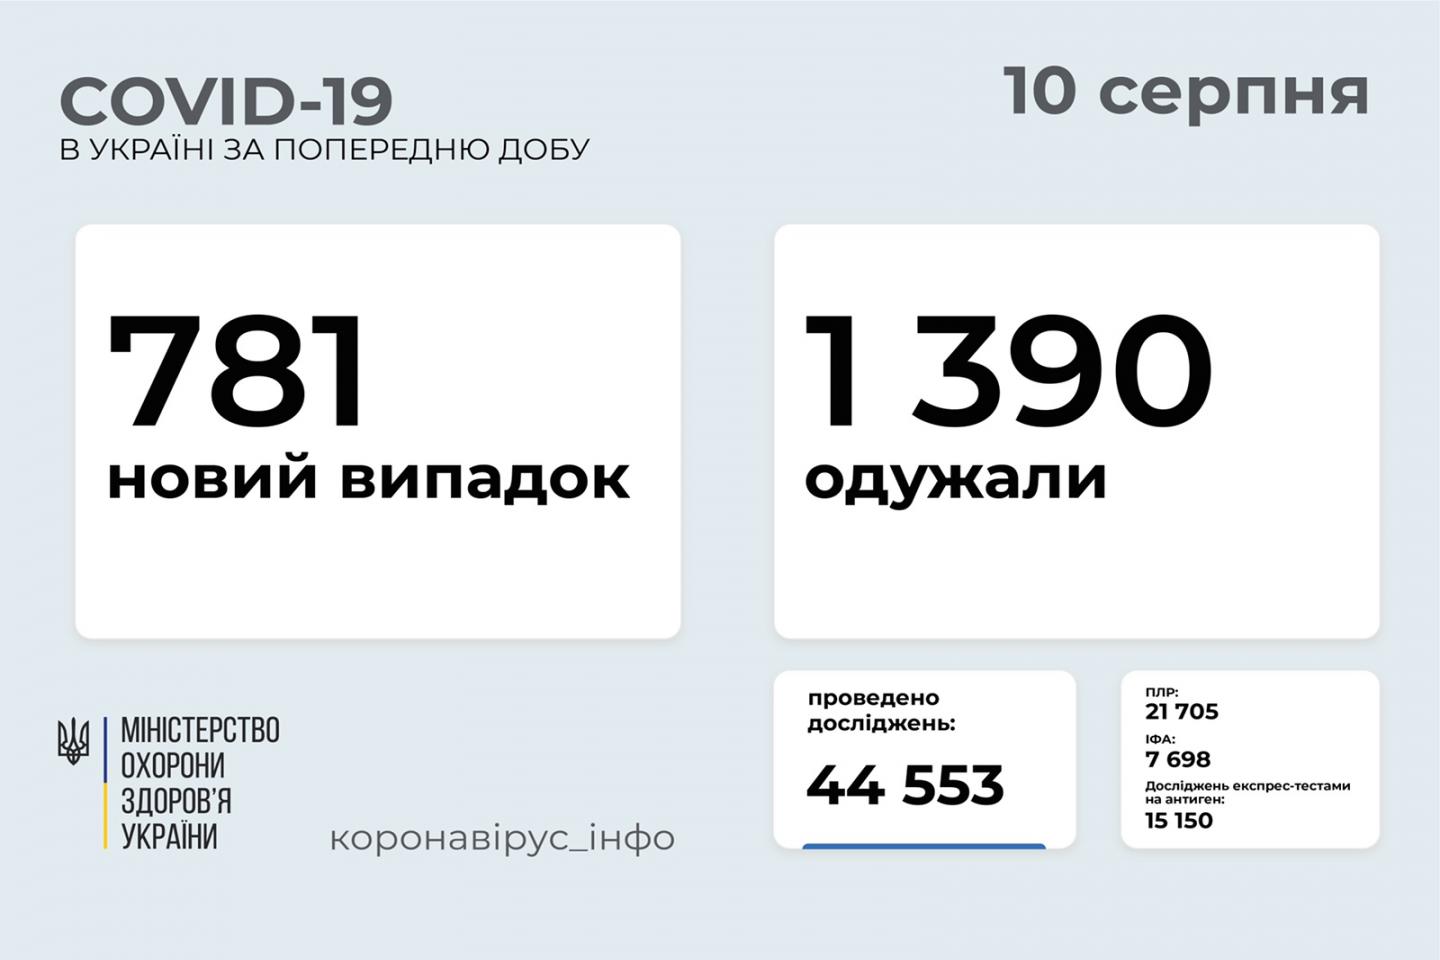 http://dunrada.gov.ua/uploadfile/archive_news/2021/08/10/2021-08-10_3445/images/images-24071.jpg